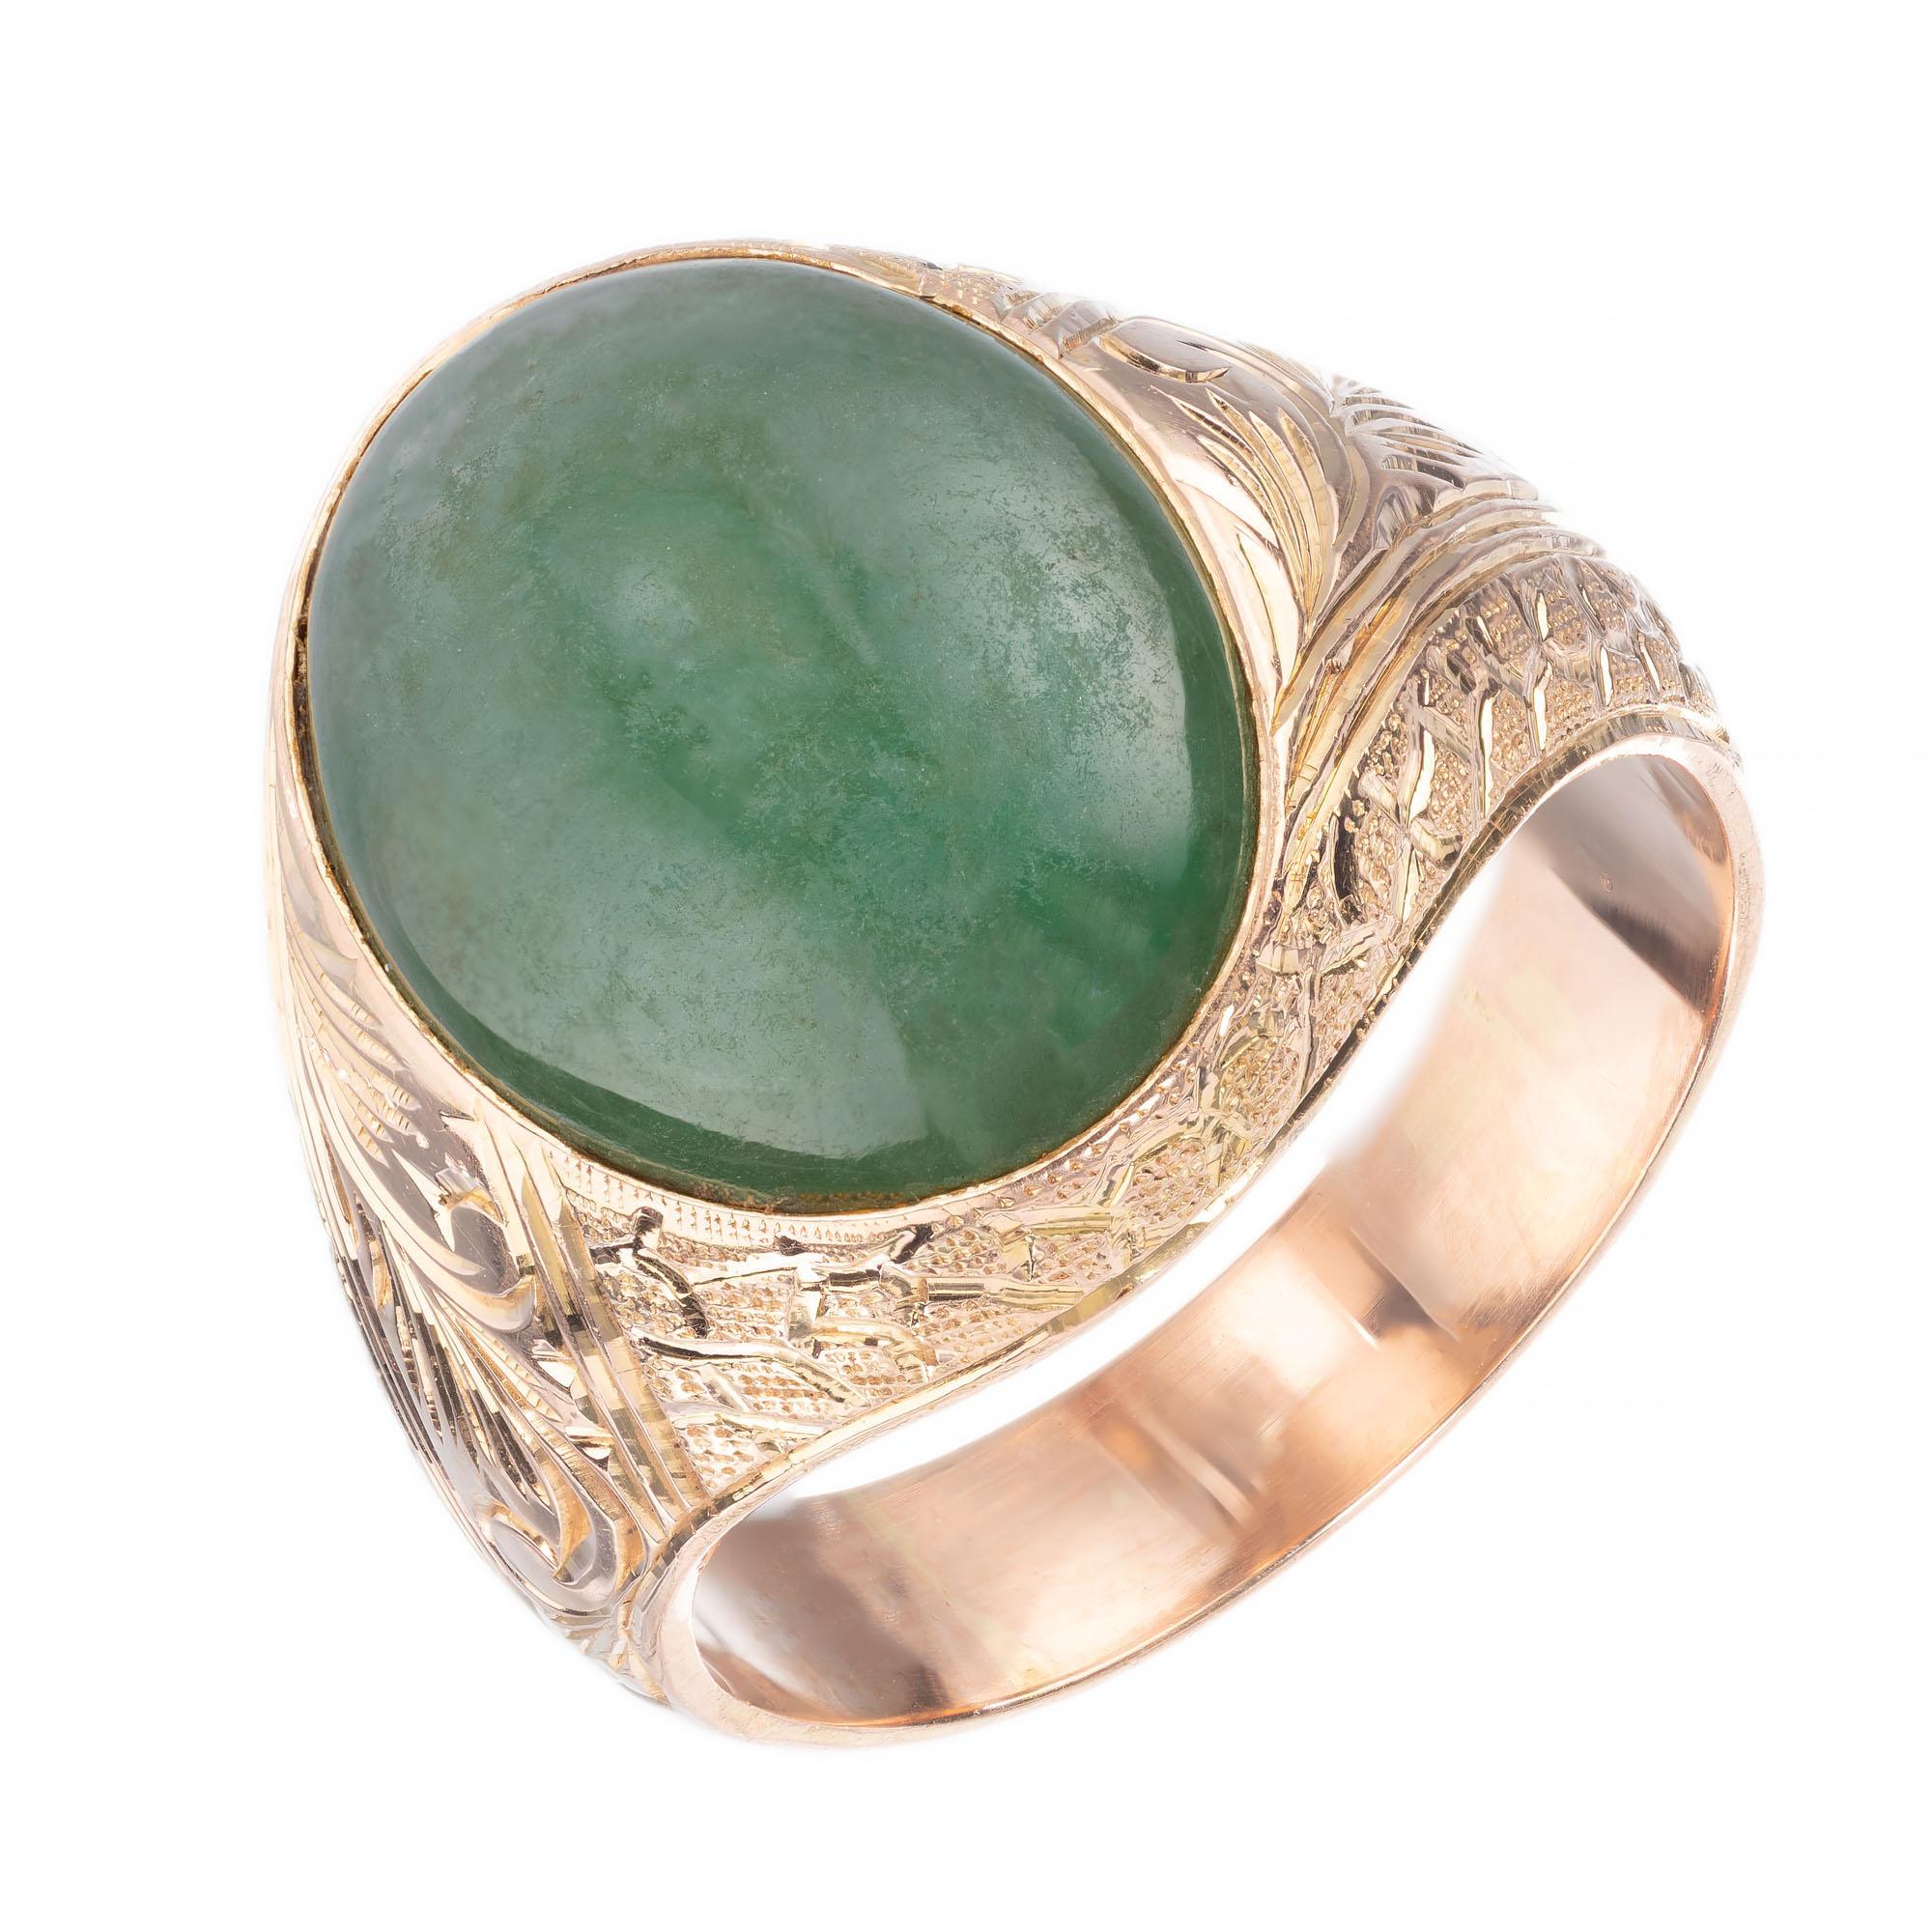 GIA-zertifizierter ovaler Jadeit-Jade-Mittelstein in einer handgefertigten, handgravierten Fassung aus 14 Karat Roségold.  

1 ovaler grüner durchscheinender Jadeit, GIA Zertifikat # 1186037918
Größe 8.75 und ansehnlich
14k Roségold 
Gestempelt: